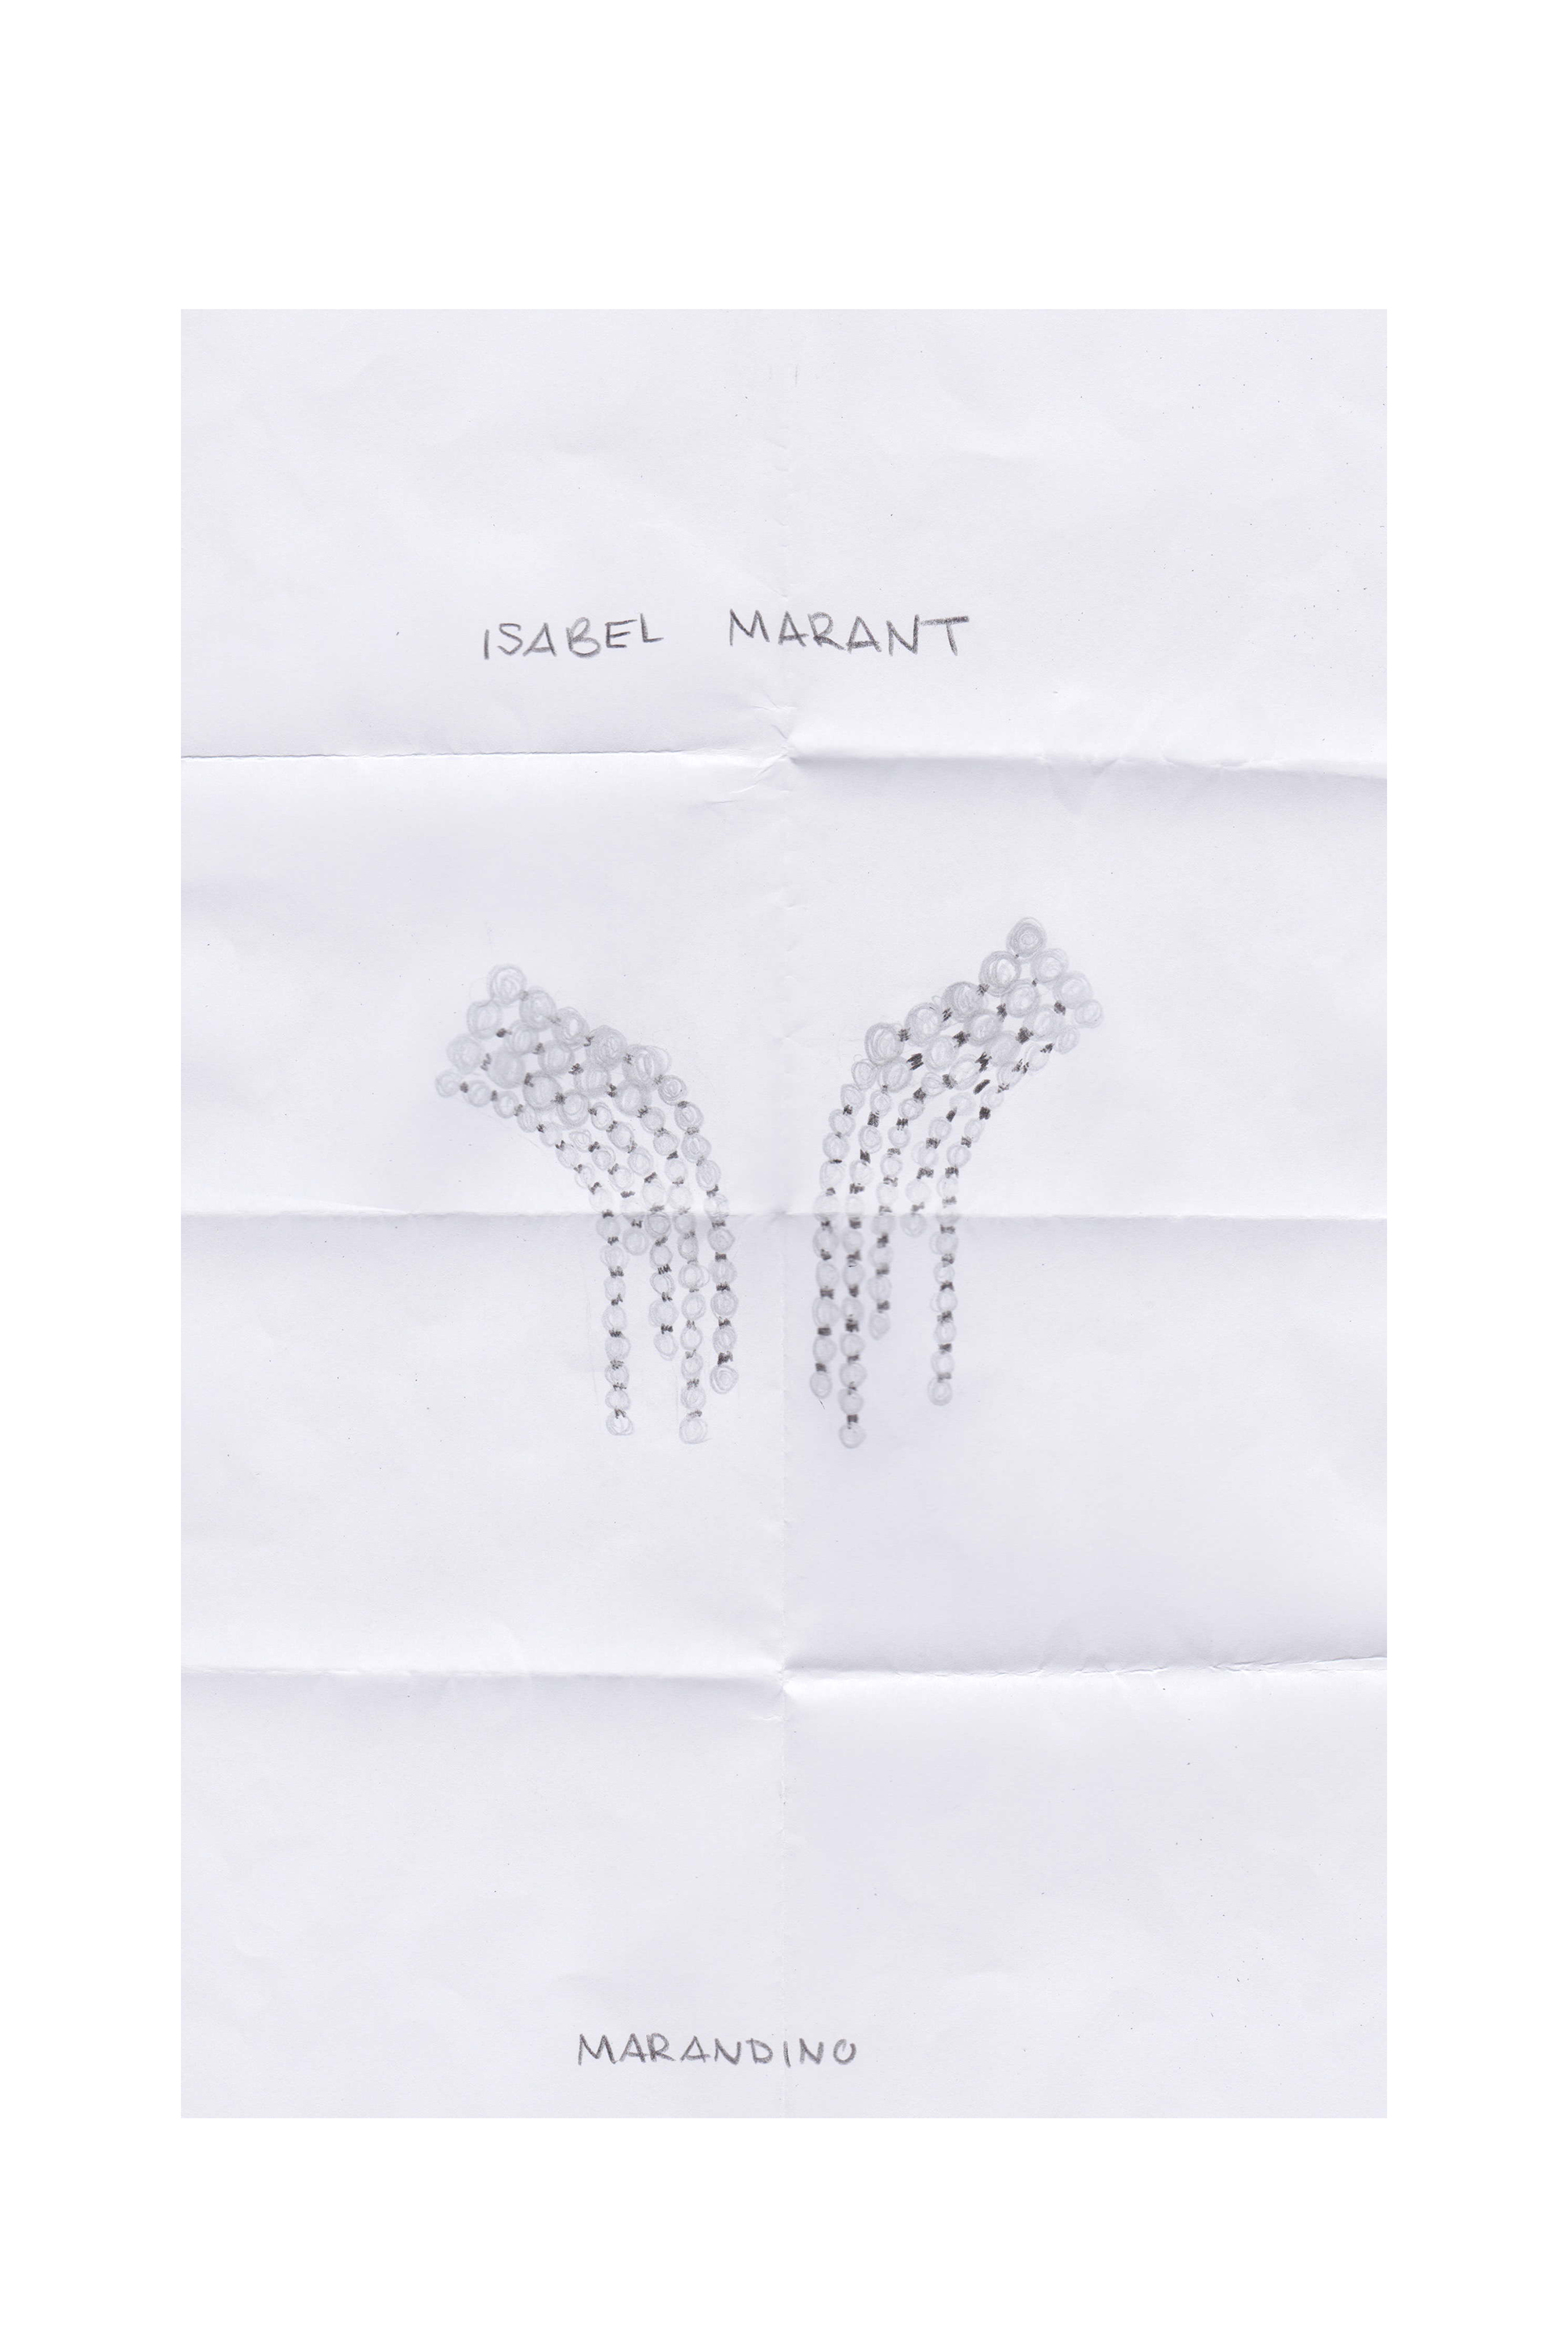 Ein Stück weißes Papier mit einem Paar silberner  Isabel Marant Ohrringe darauf